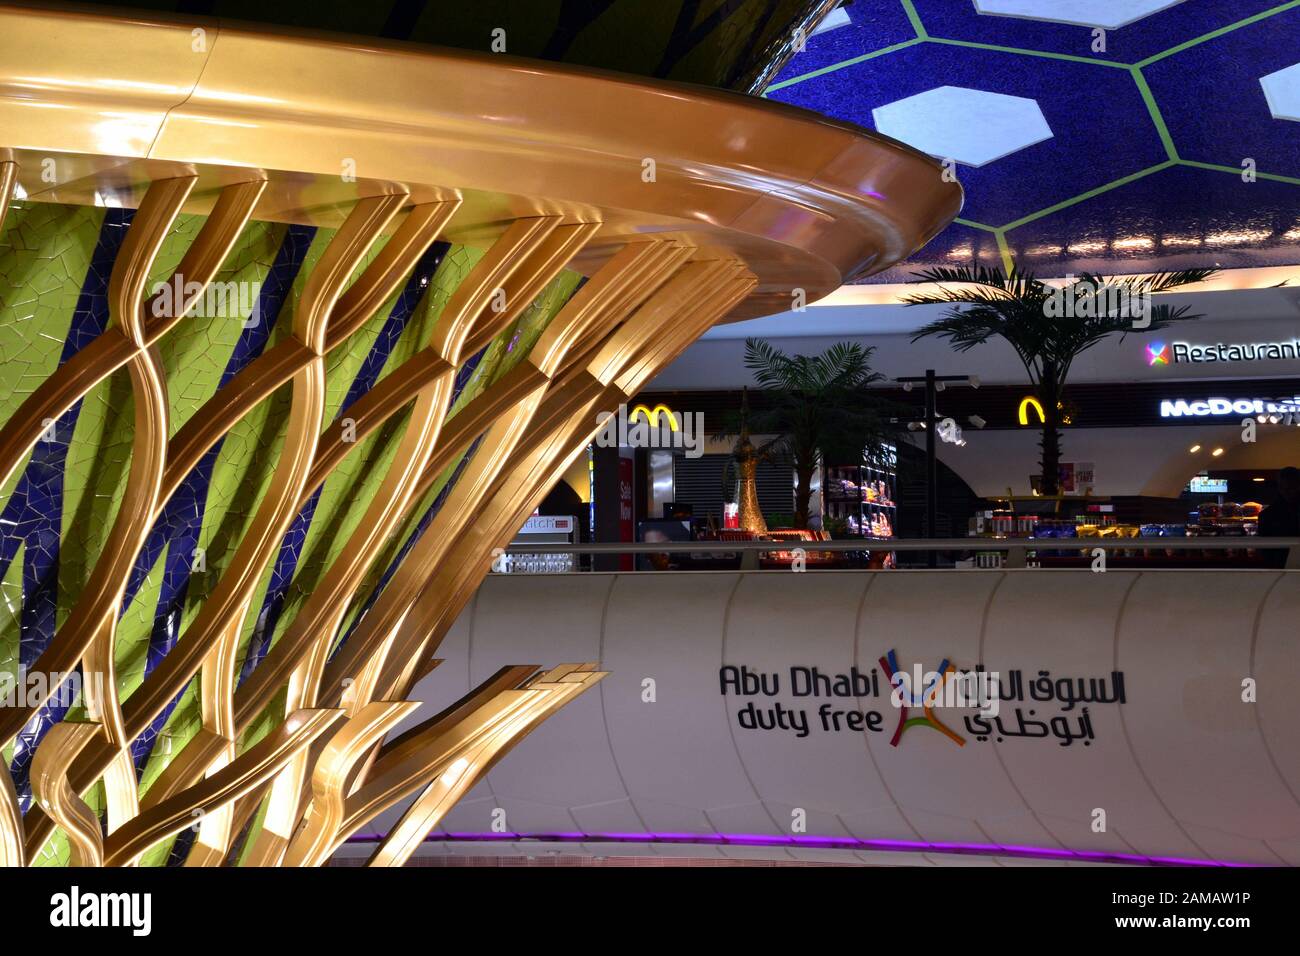 L'area centrale del Terminal 1 all'Aeroporto di Abu Dhabi, Abu Dhabi, Emirati Arabi Uniti, include un cartello che indica i suoi negozi duty free Foto Stock